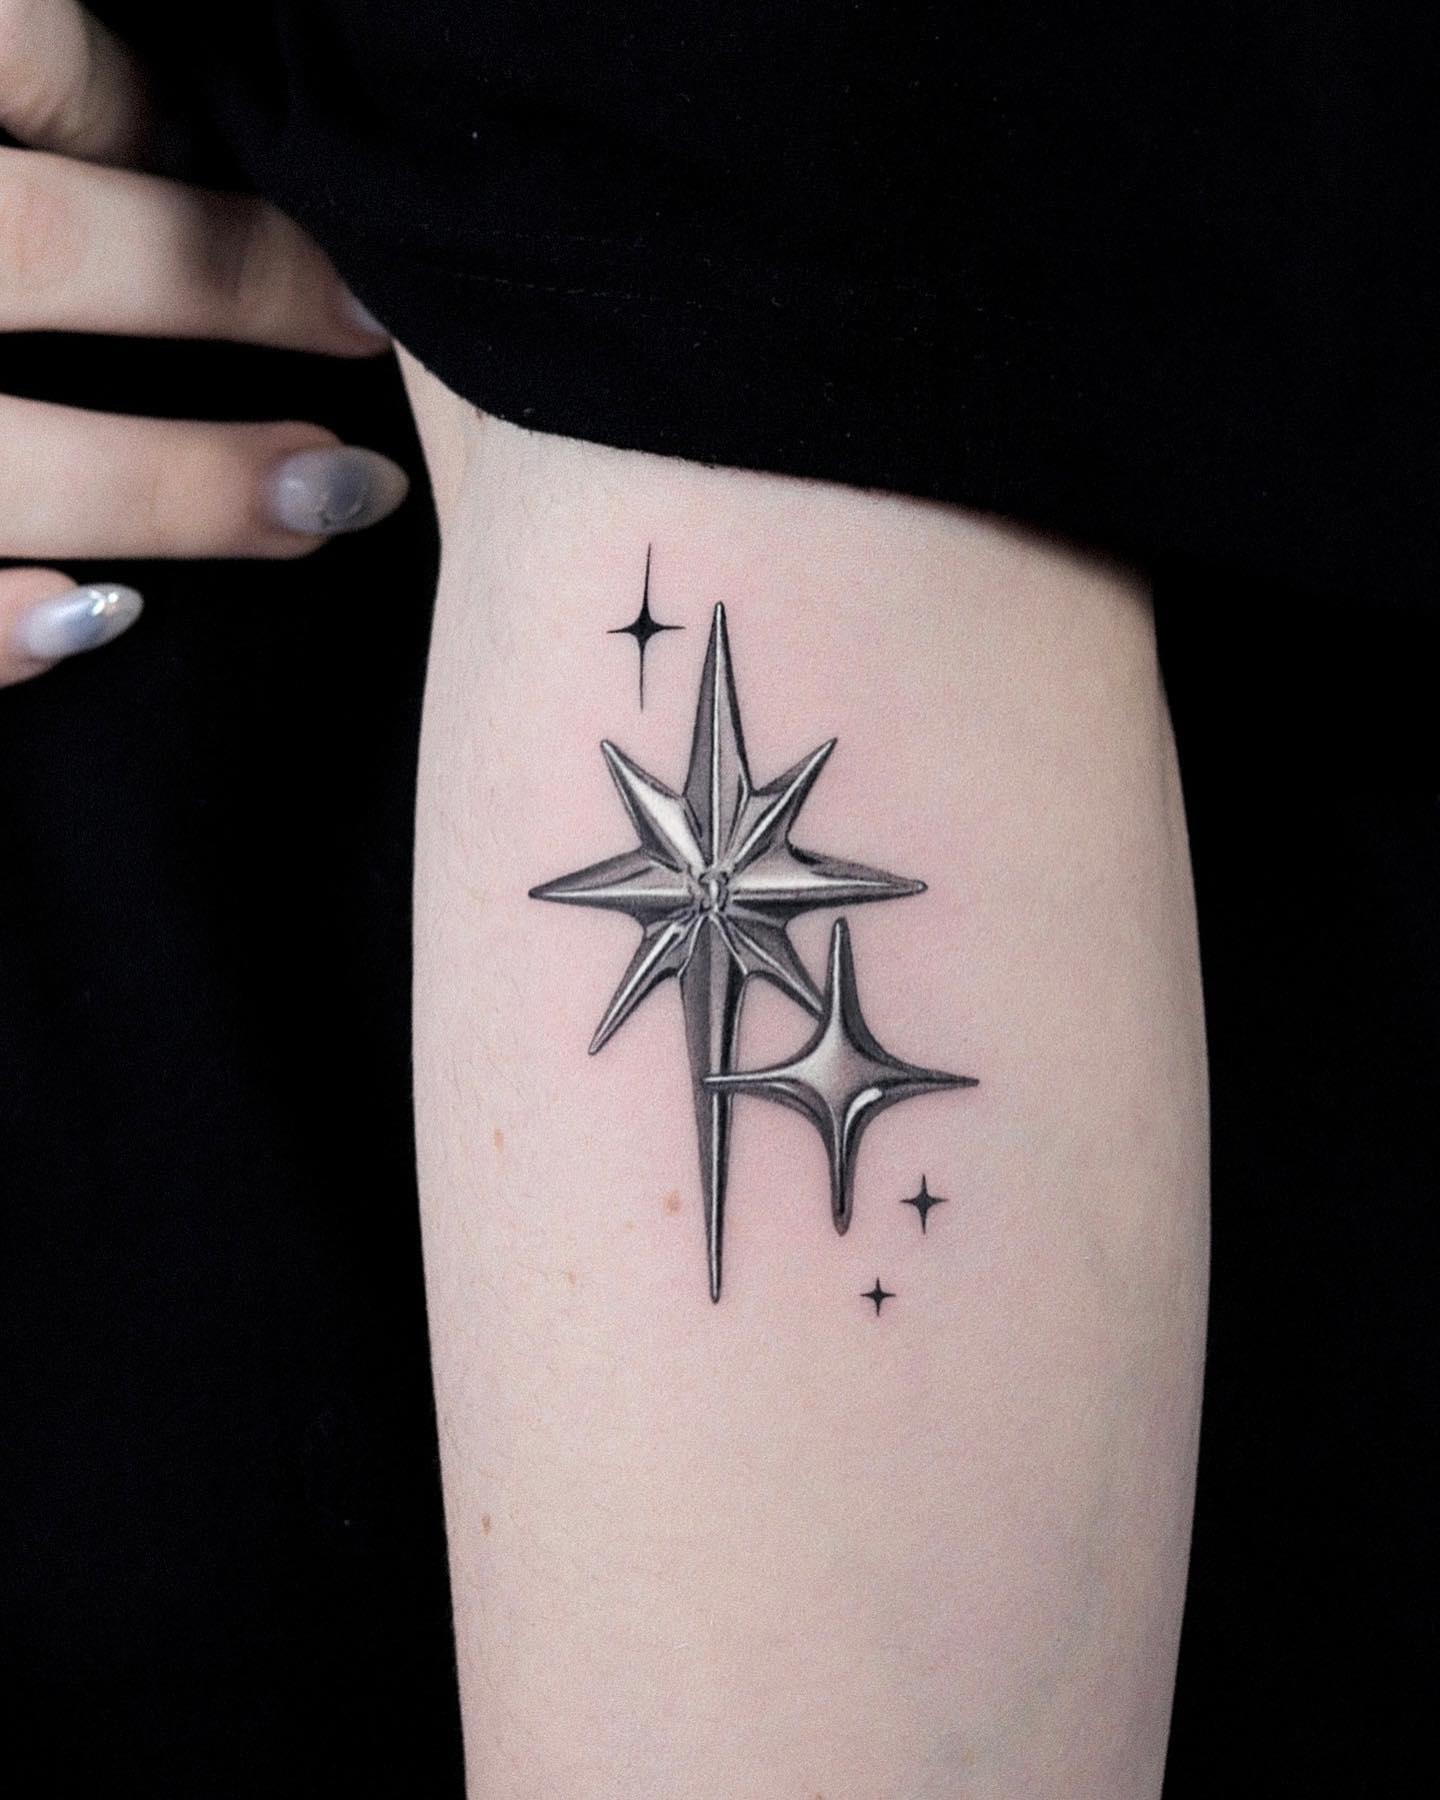 Tatuaje del Estrella Polar Tridimensional en el Brazo